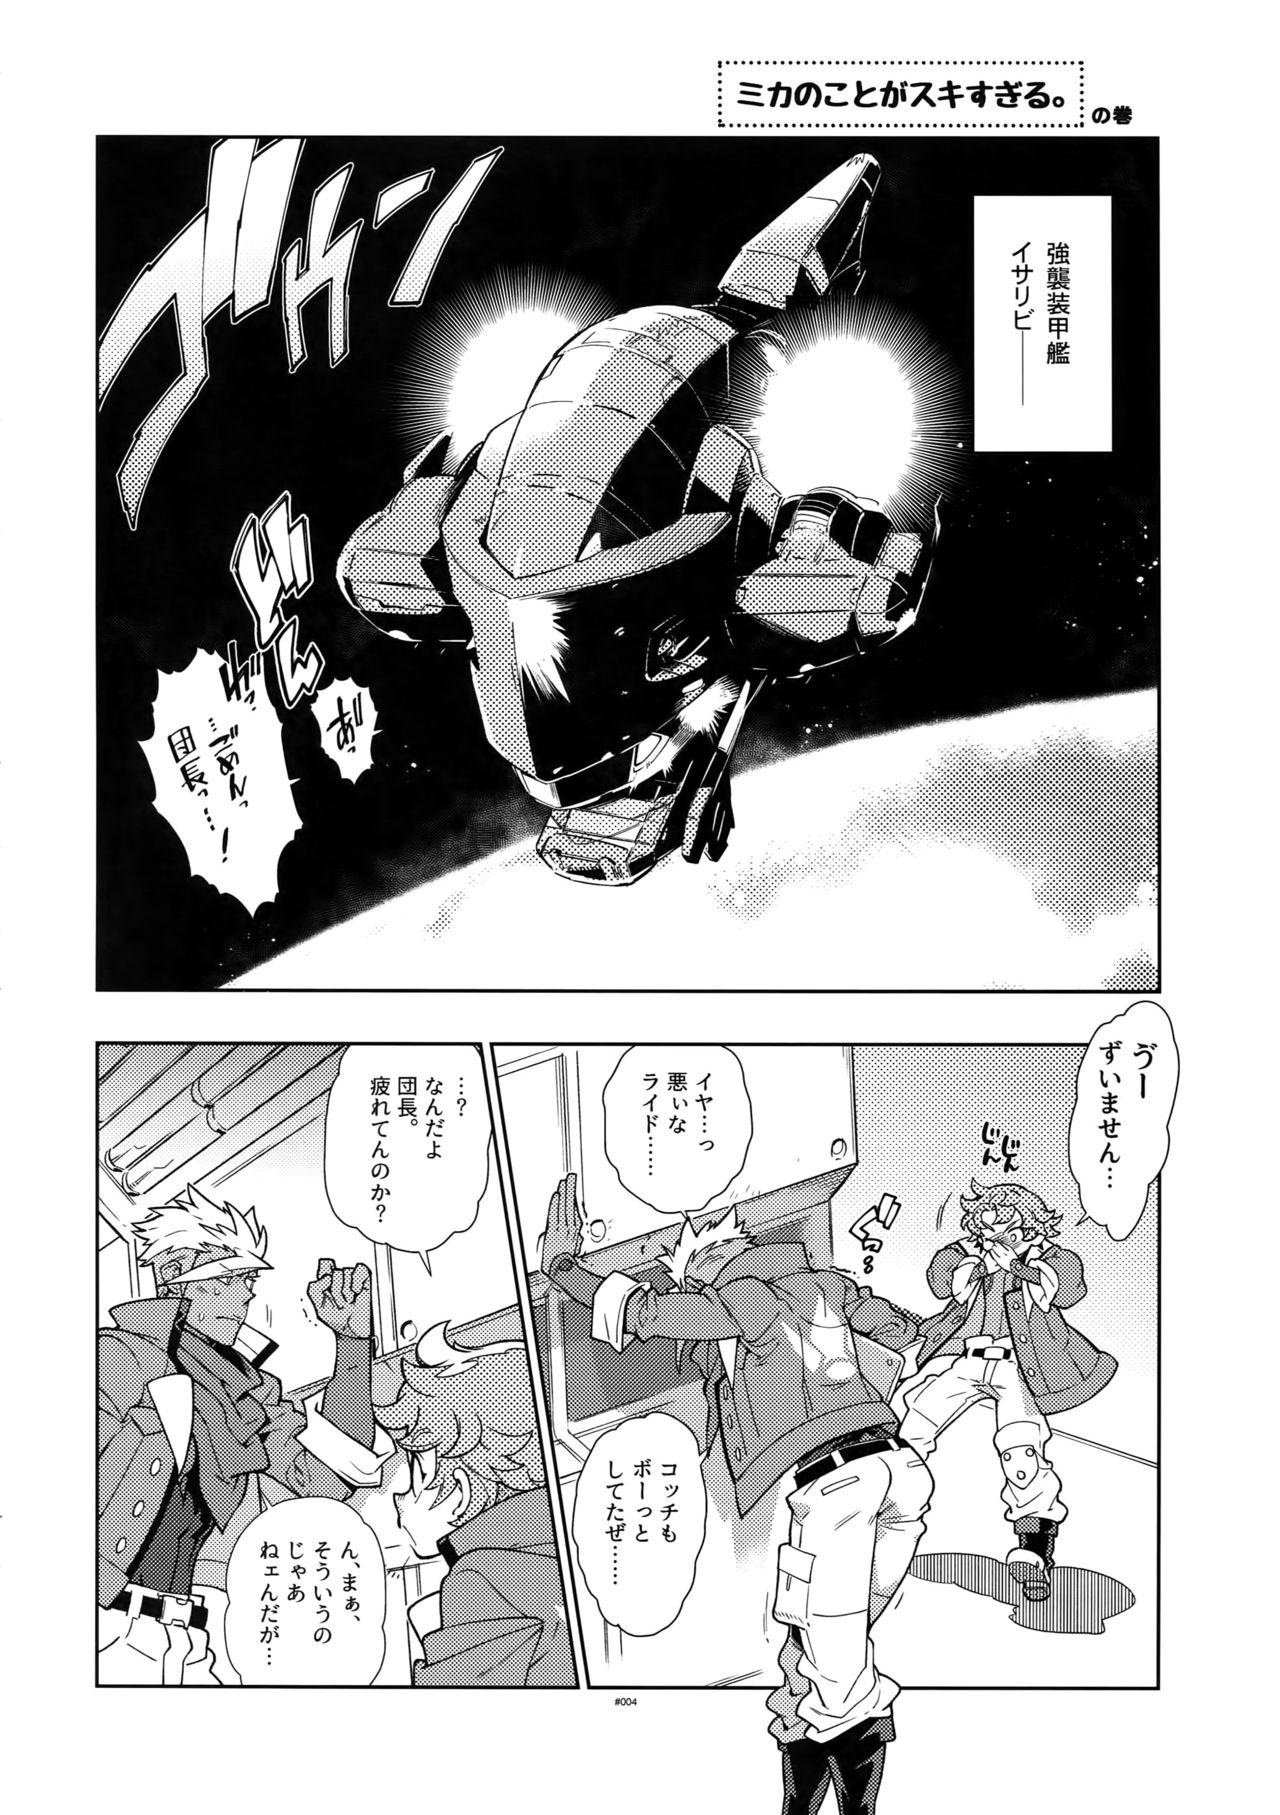 Amature Mika no Koto ga Suki Sugiru. - Mobile suit gundam tekketsu no orphans Stepfamily - Page 3